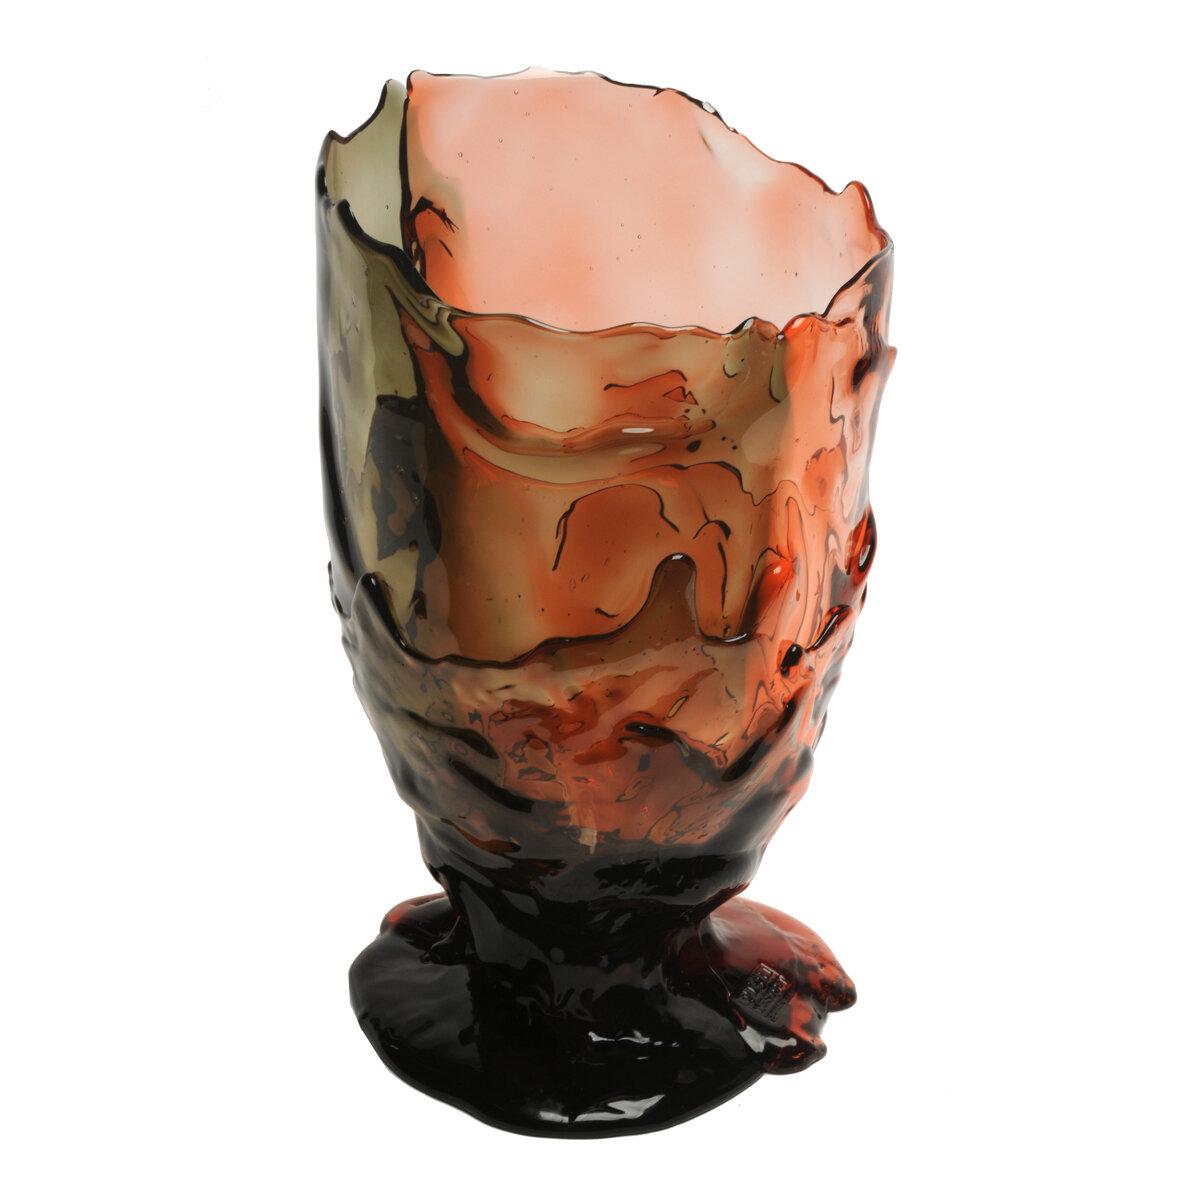 Vase Twin-C, klar, grau und rosa.

Vase aus weichem Harz, entworfen von Gaetano Pesce im Jahr 1995 für die Collection'S Fish Design.

Maße: M ø 16cm x H 26cm

Andere Größen verfügbar.

Farben: Hellgrau und rosa.

Vase aus weichem Harz,